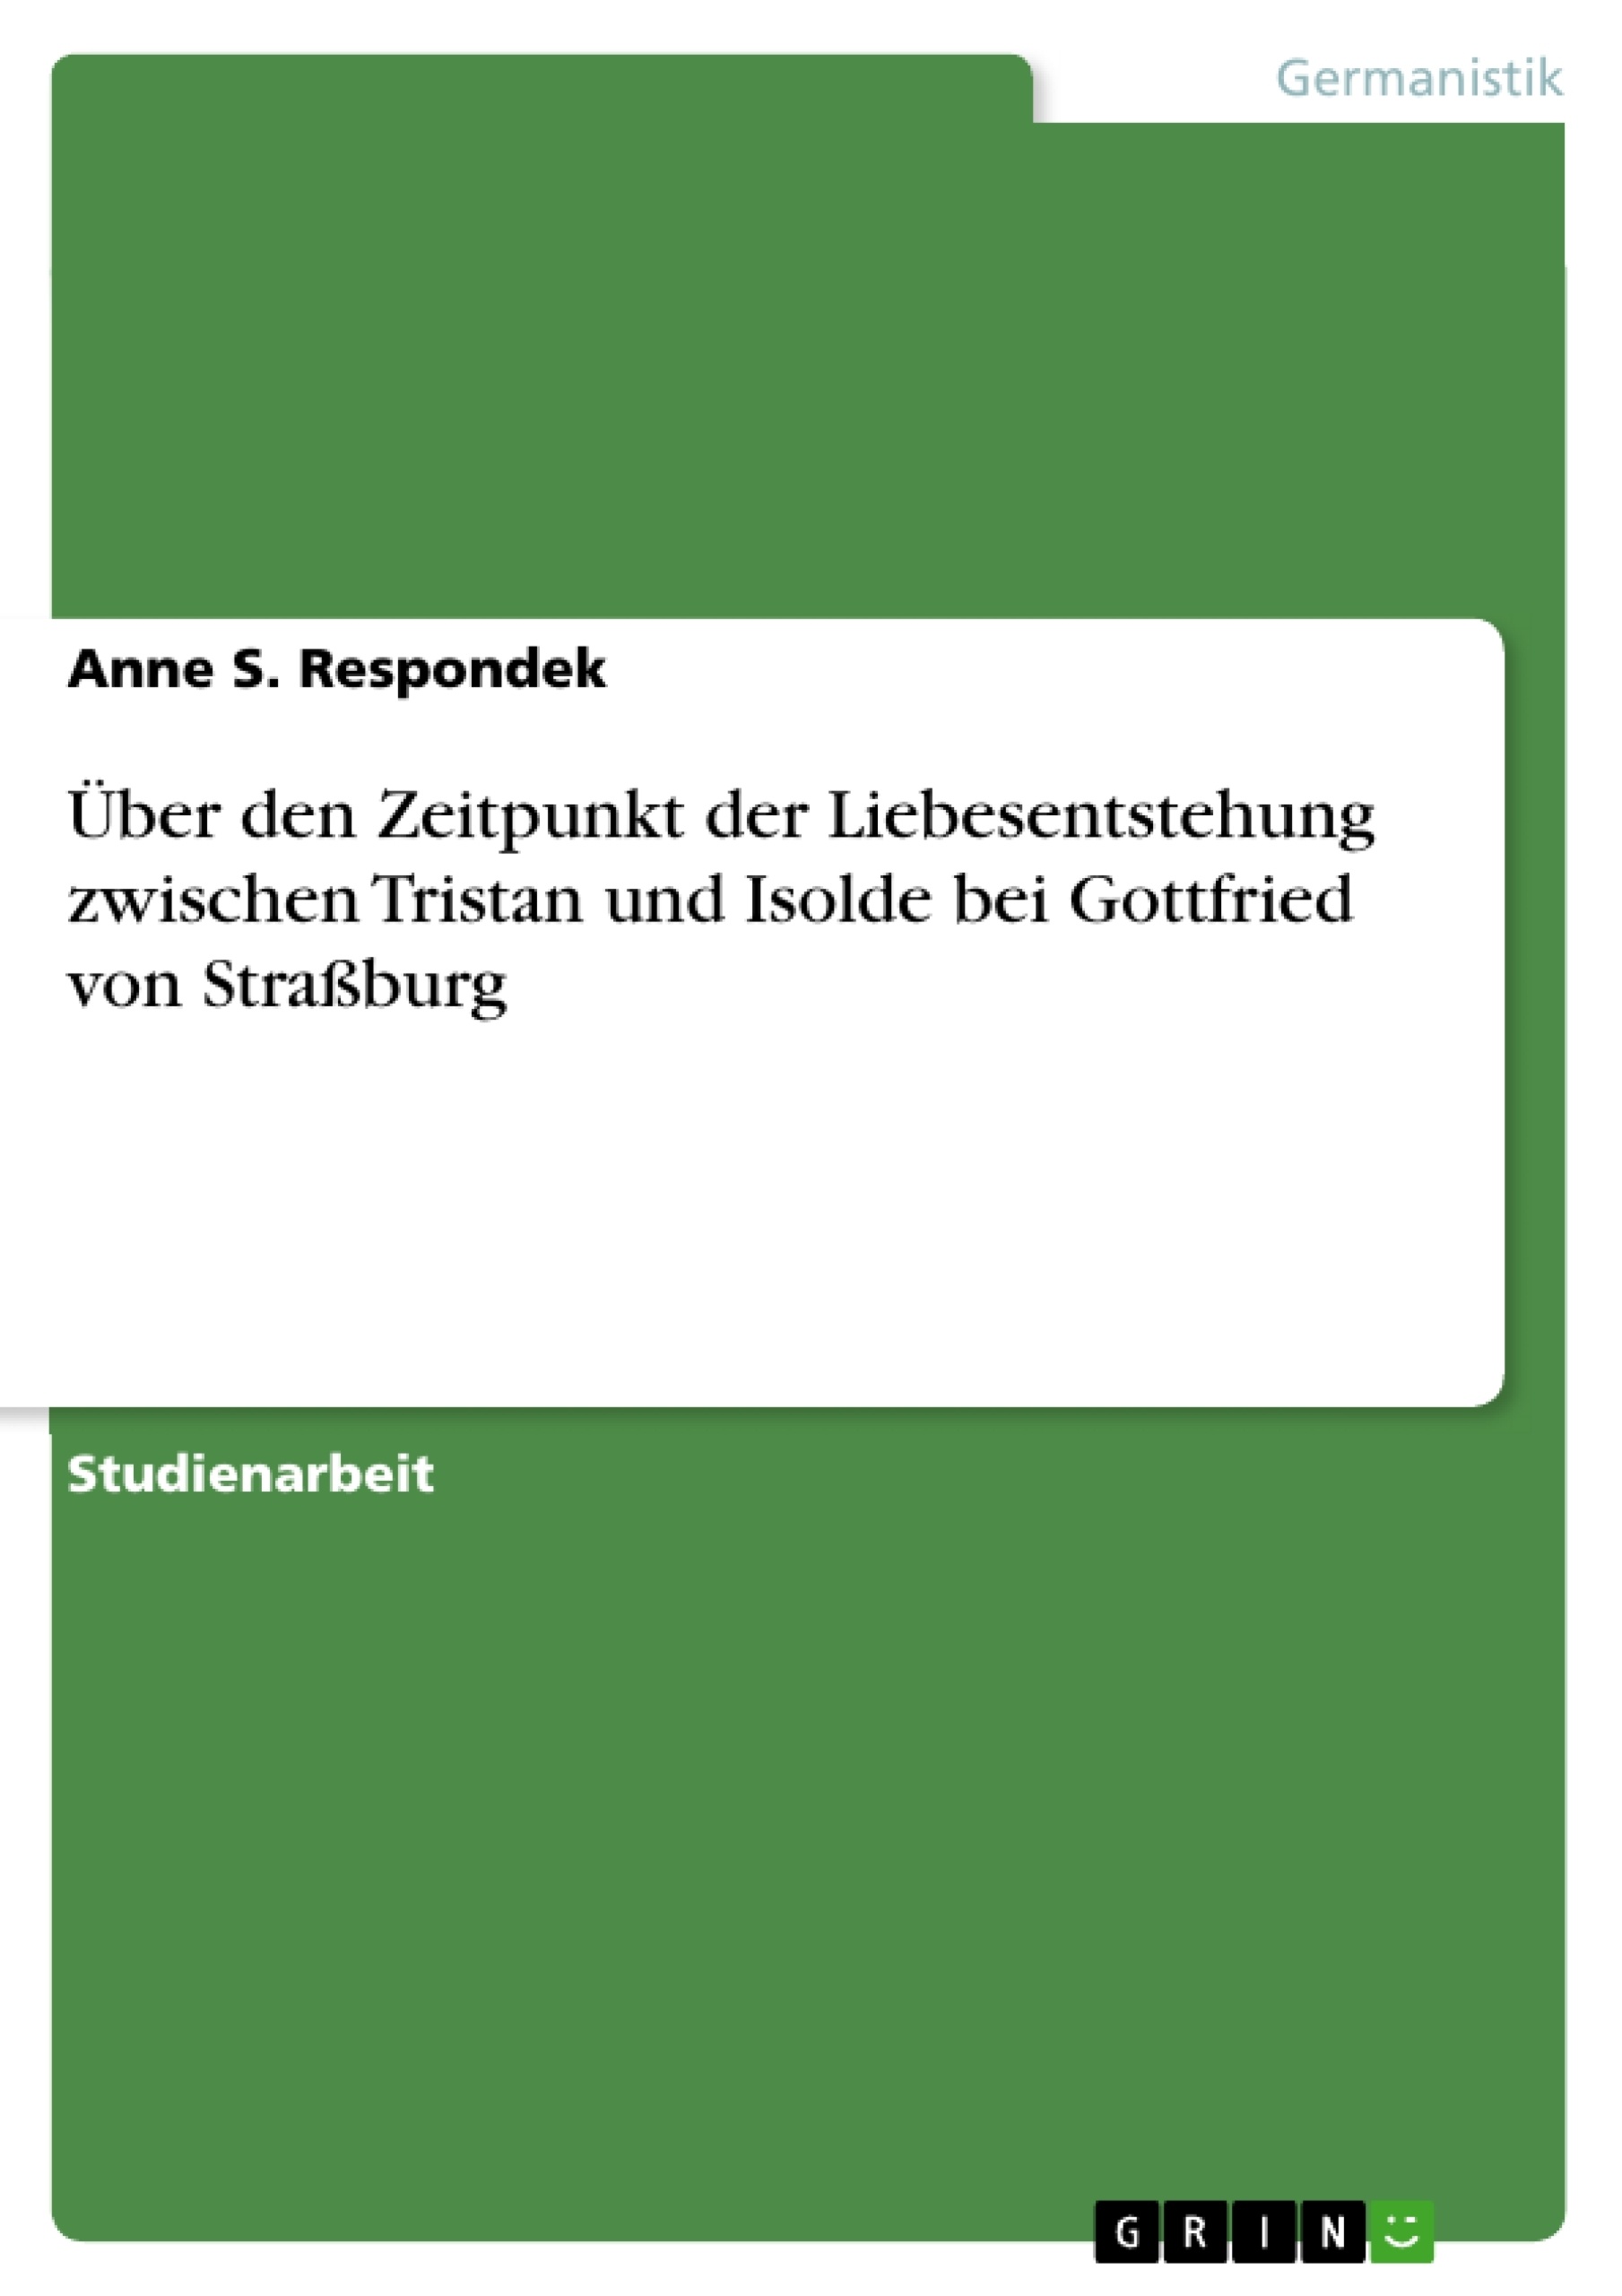 Titre: Über den Zeitpunkt der Liebesentstehung zwischen Tristan und Isolde bei Gottfried von Straßburg